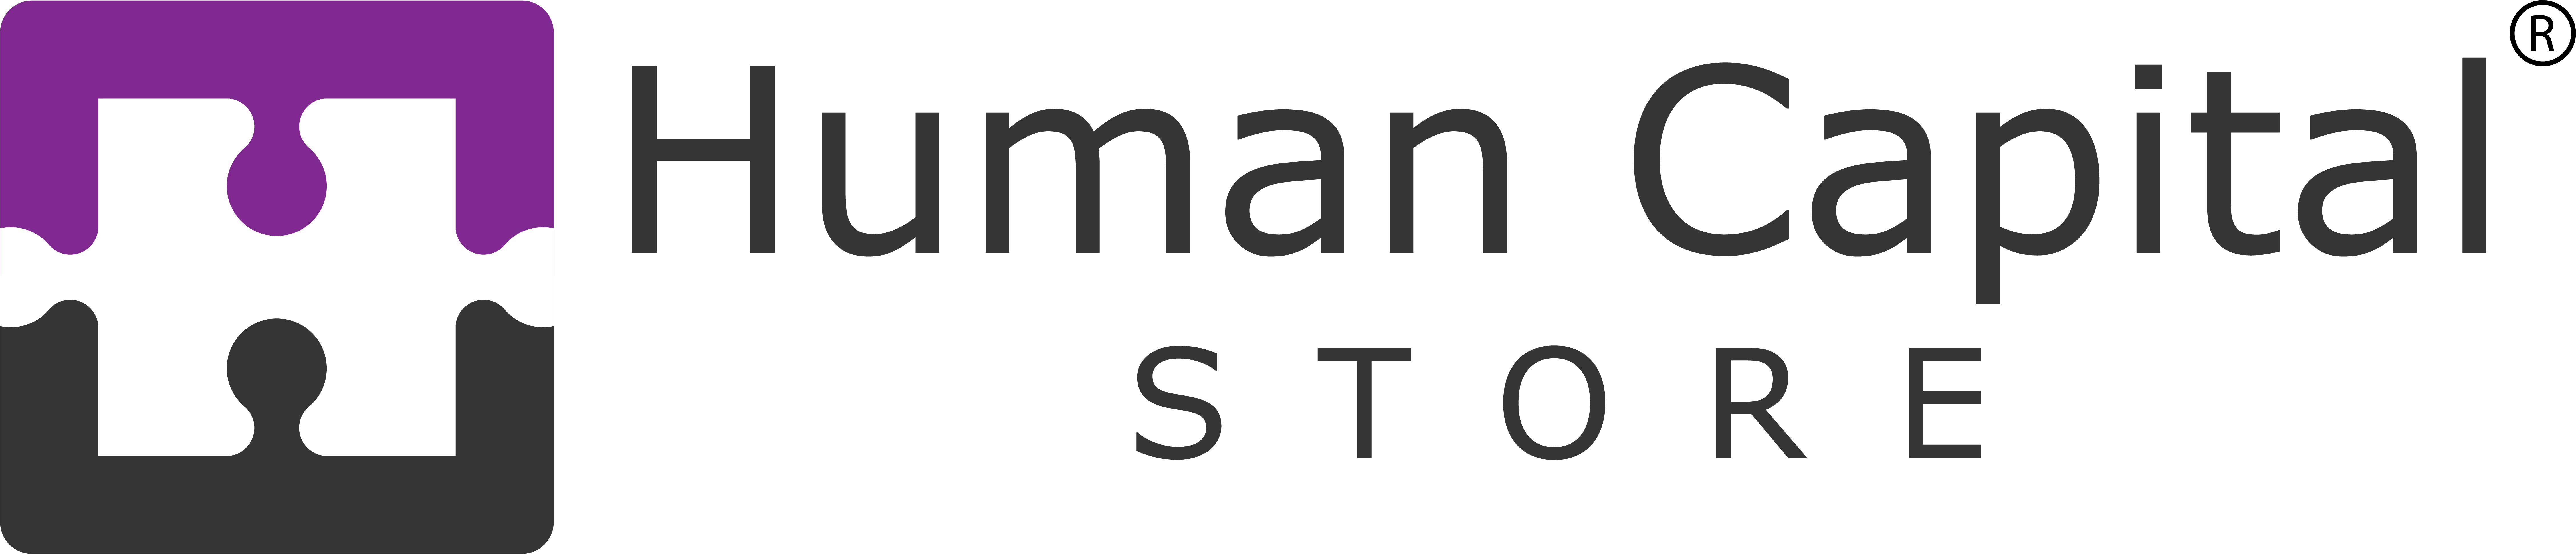 Human Capital Store Ltd.